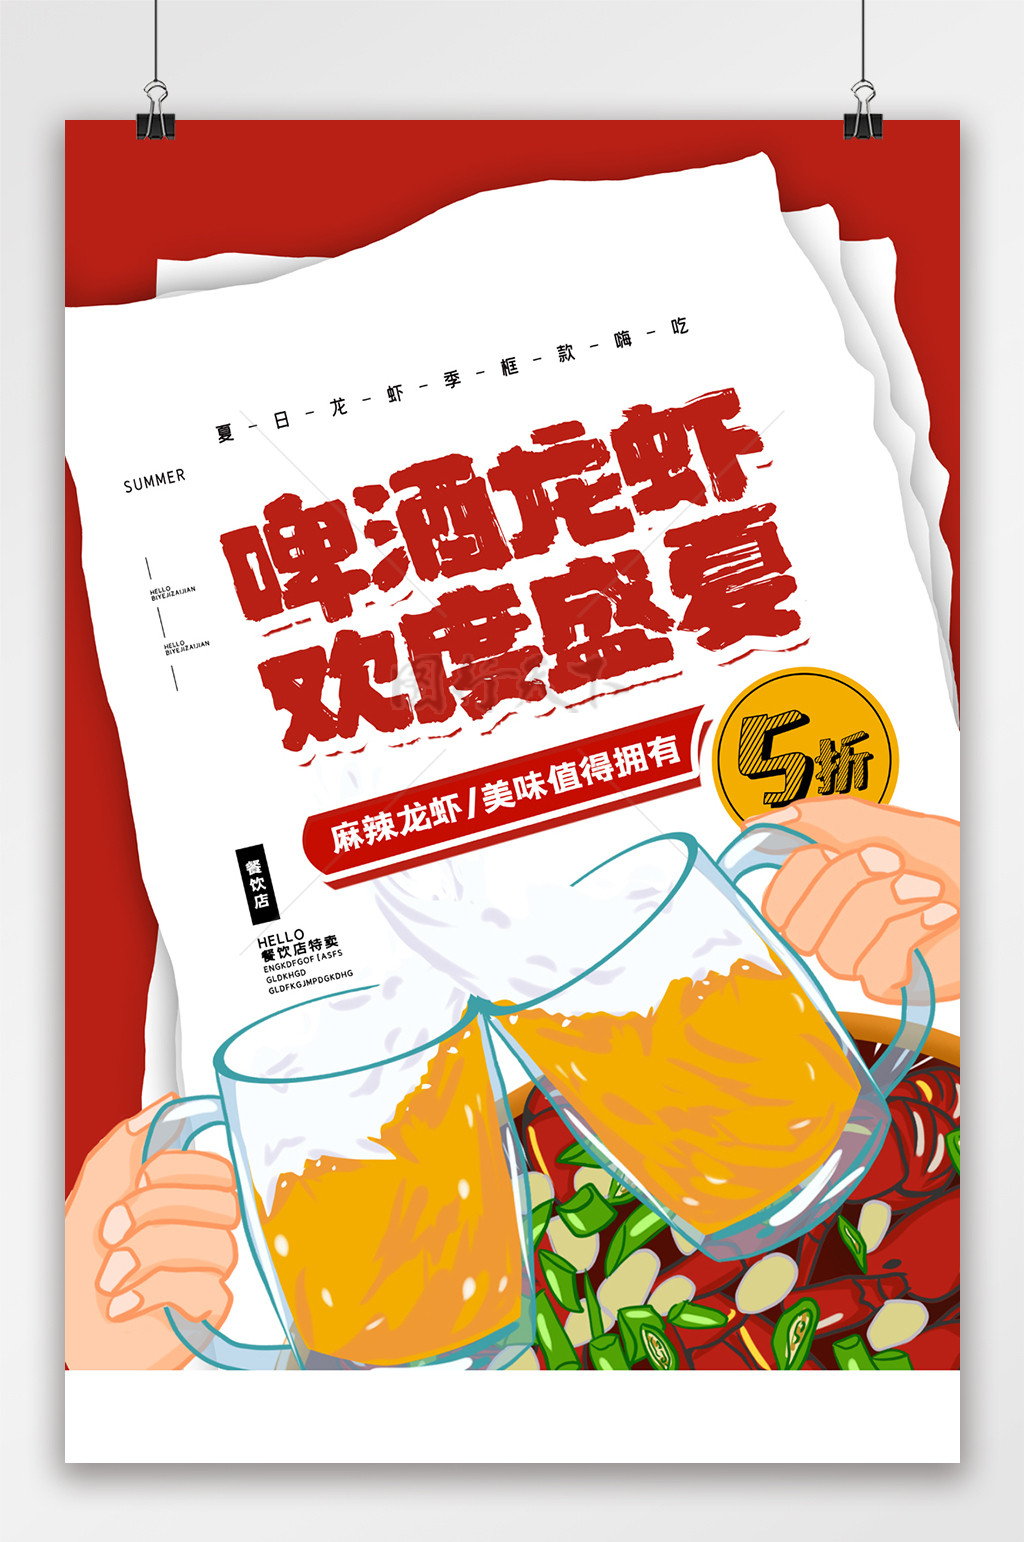 夏日美食龙虾烧烤宣传海报设计